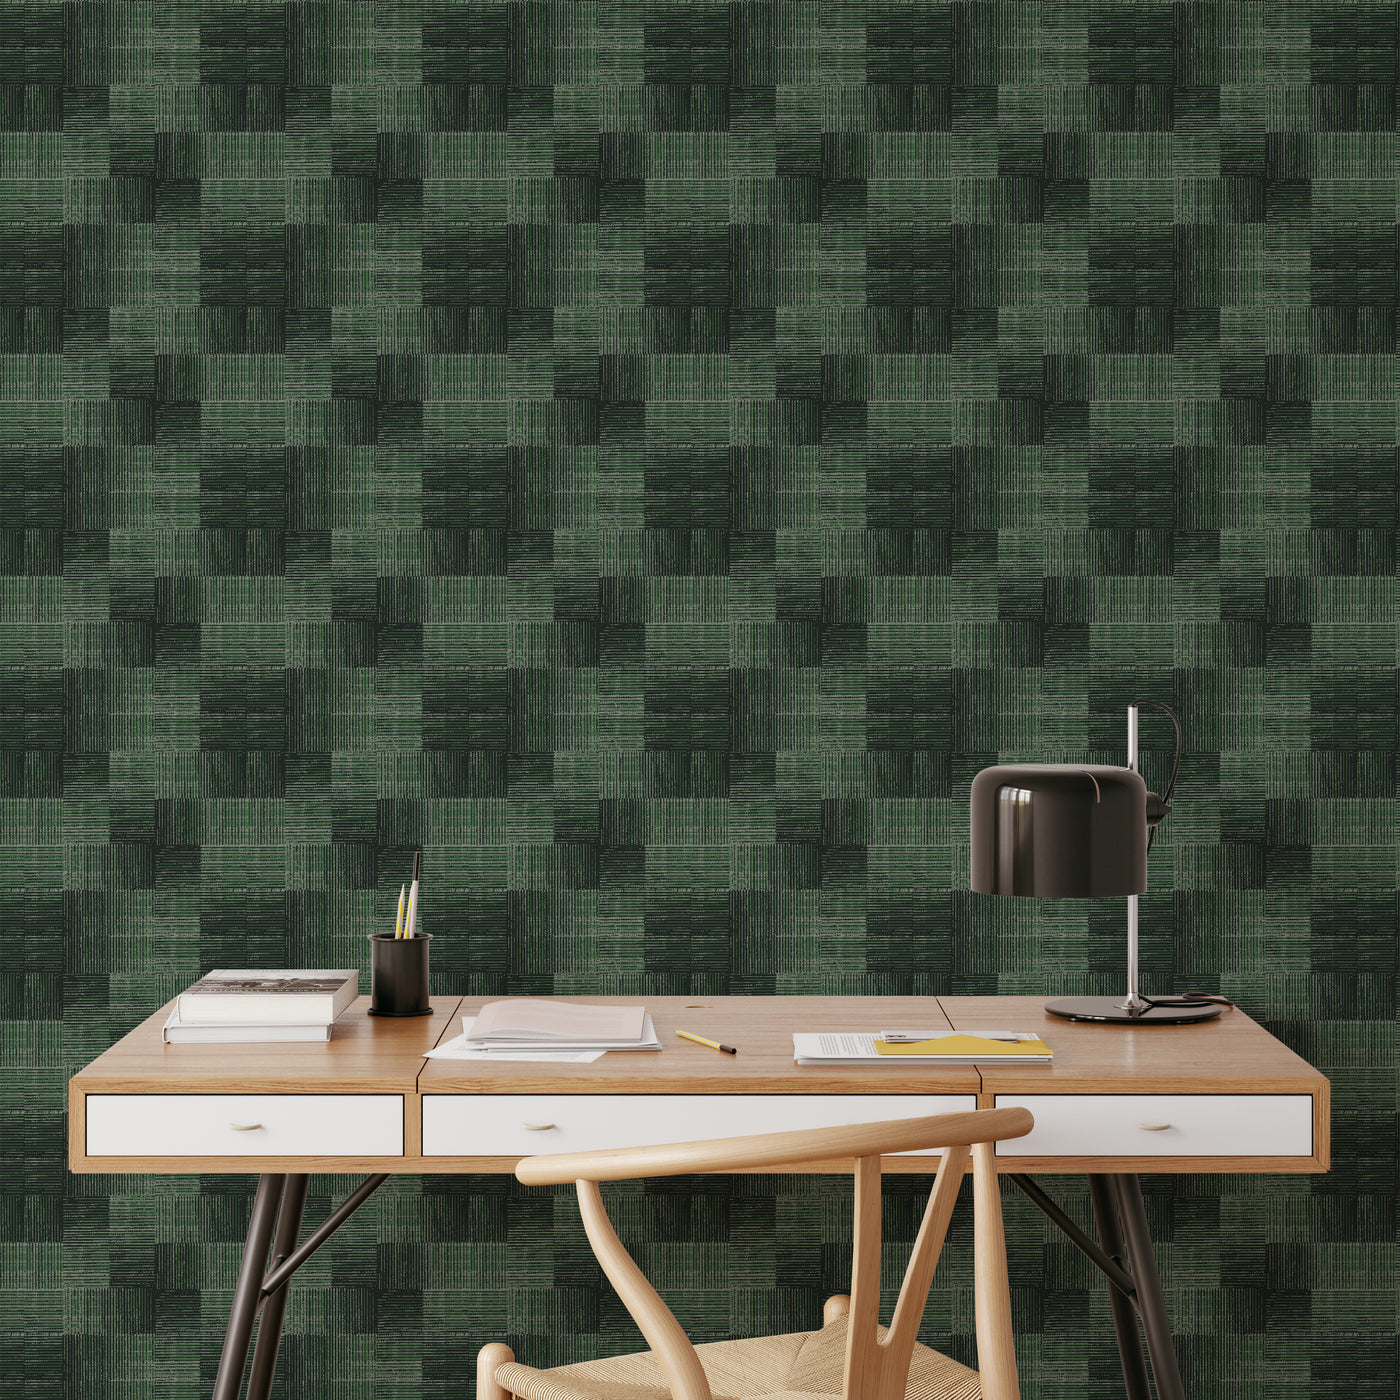 Dark Green Checker Grasscloth Wallpaper CG027